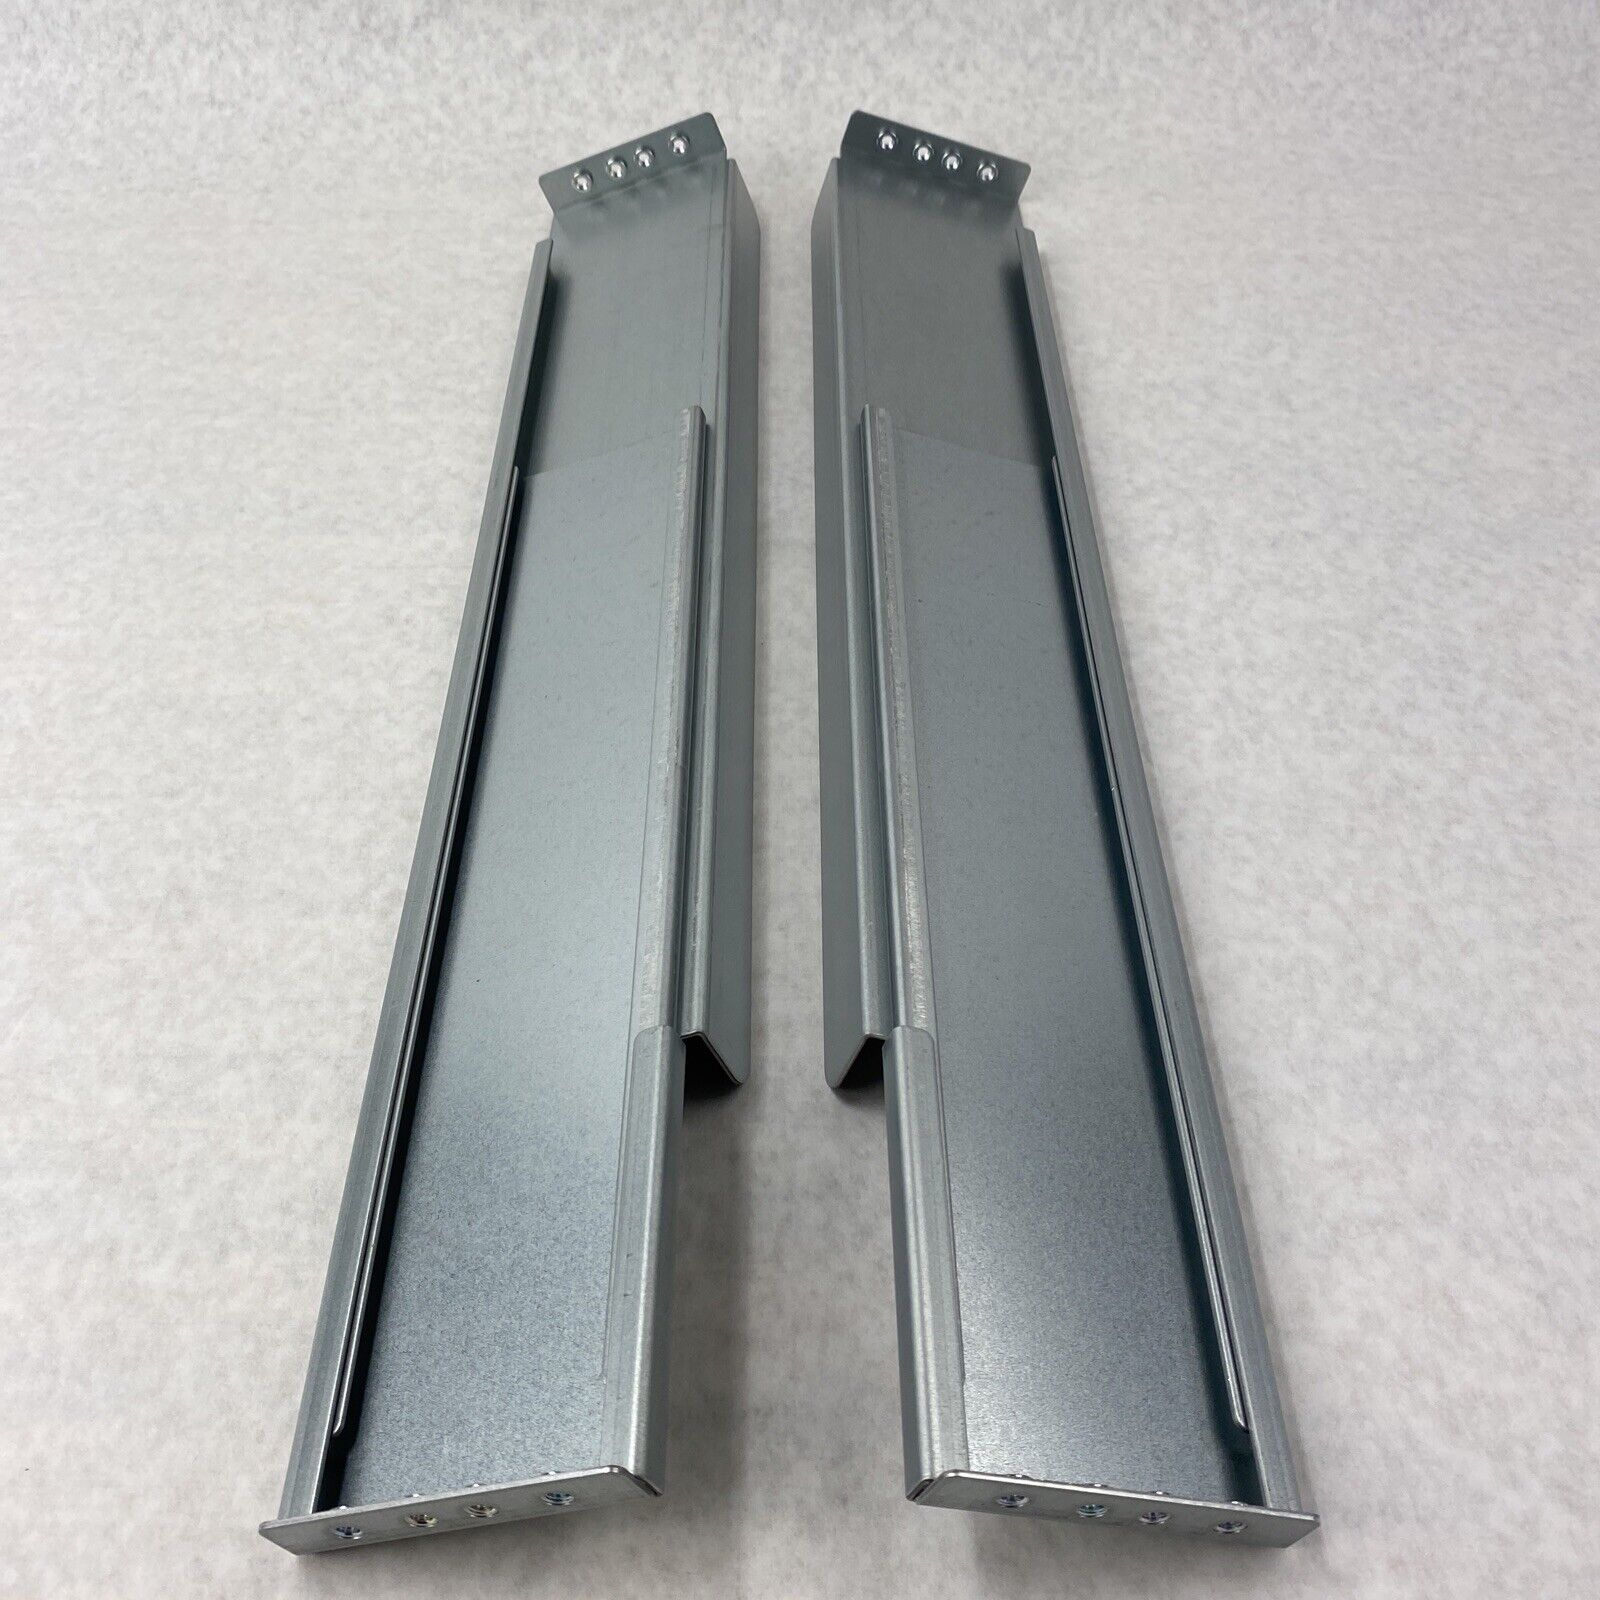 Emerson 19" Mounting Rack Slide Rail Kit for GXT5 UPS